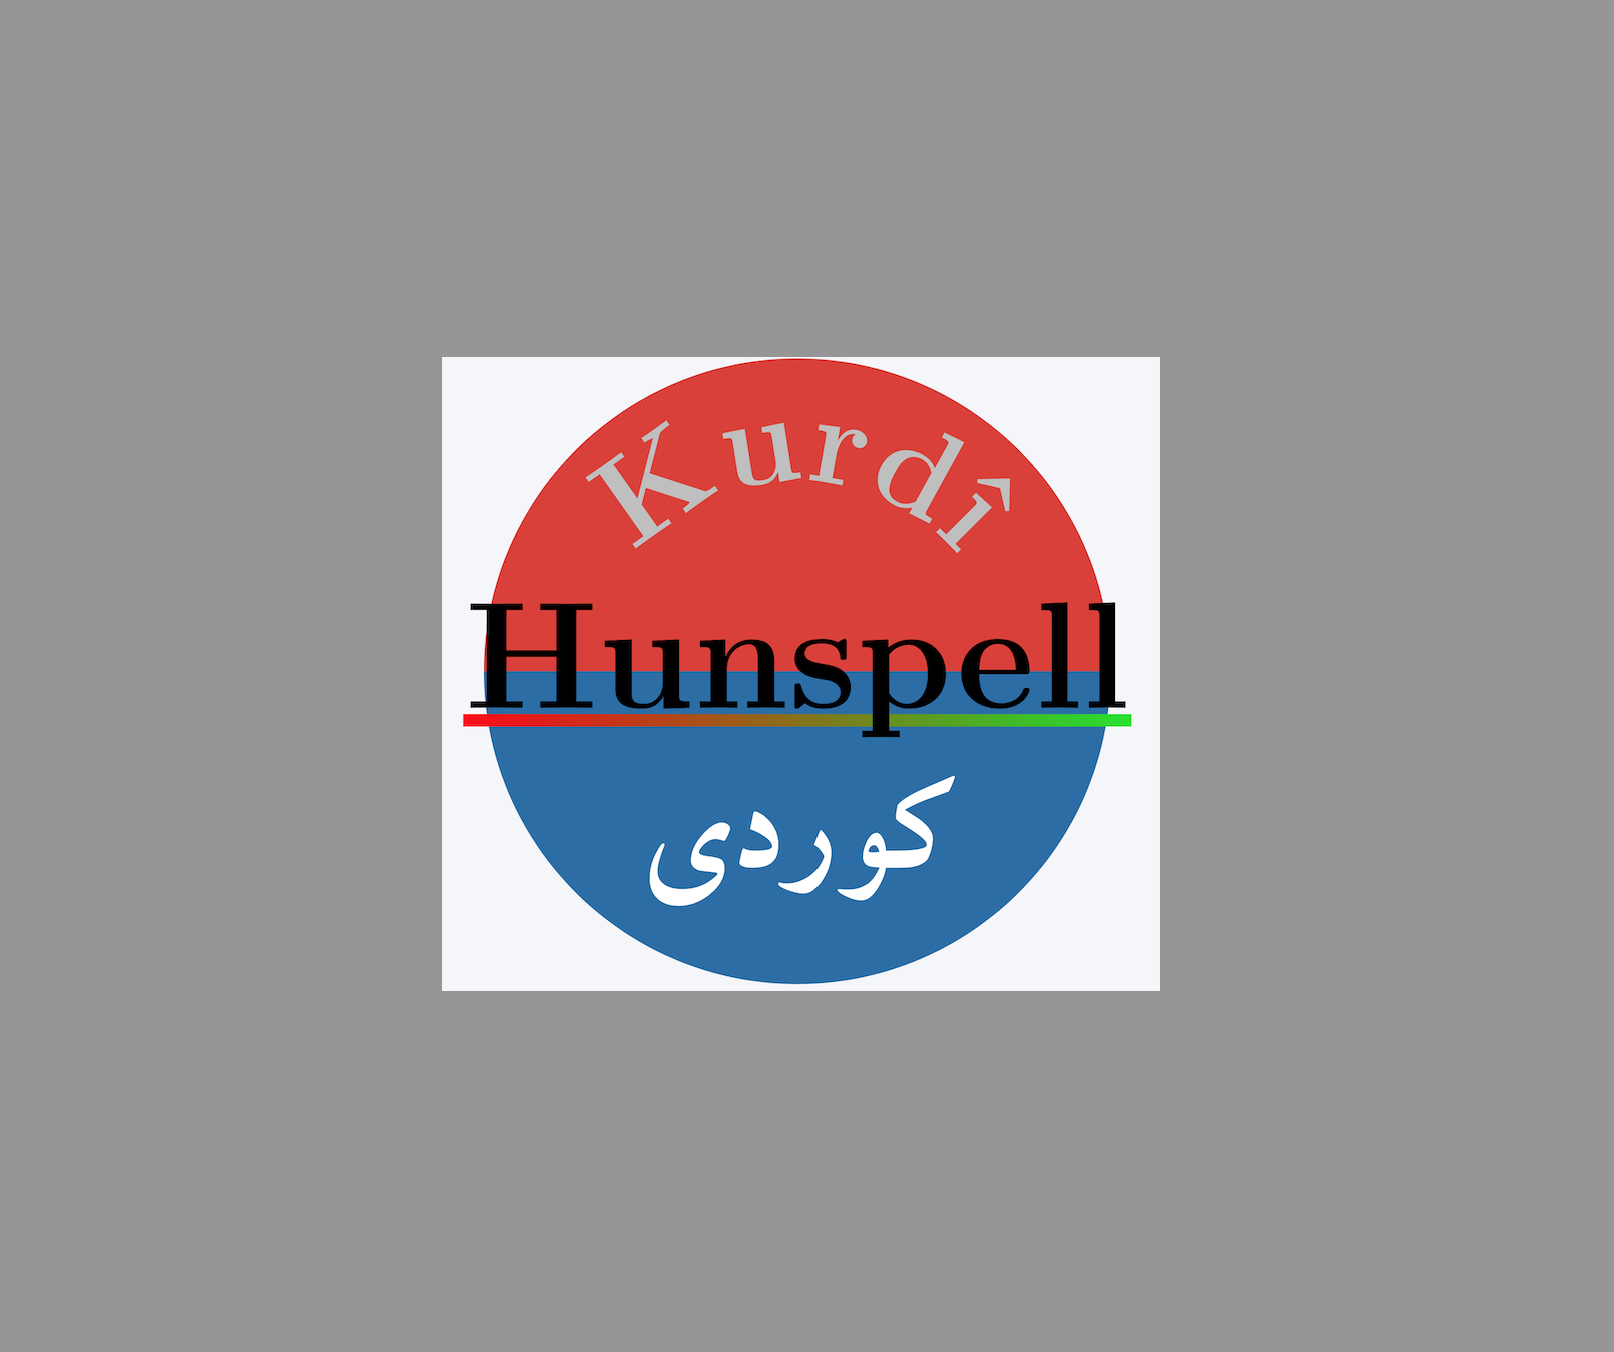 KurdishHunspell